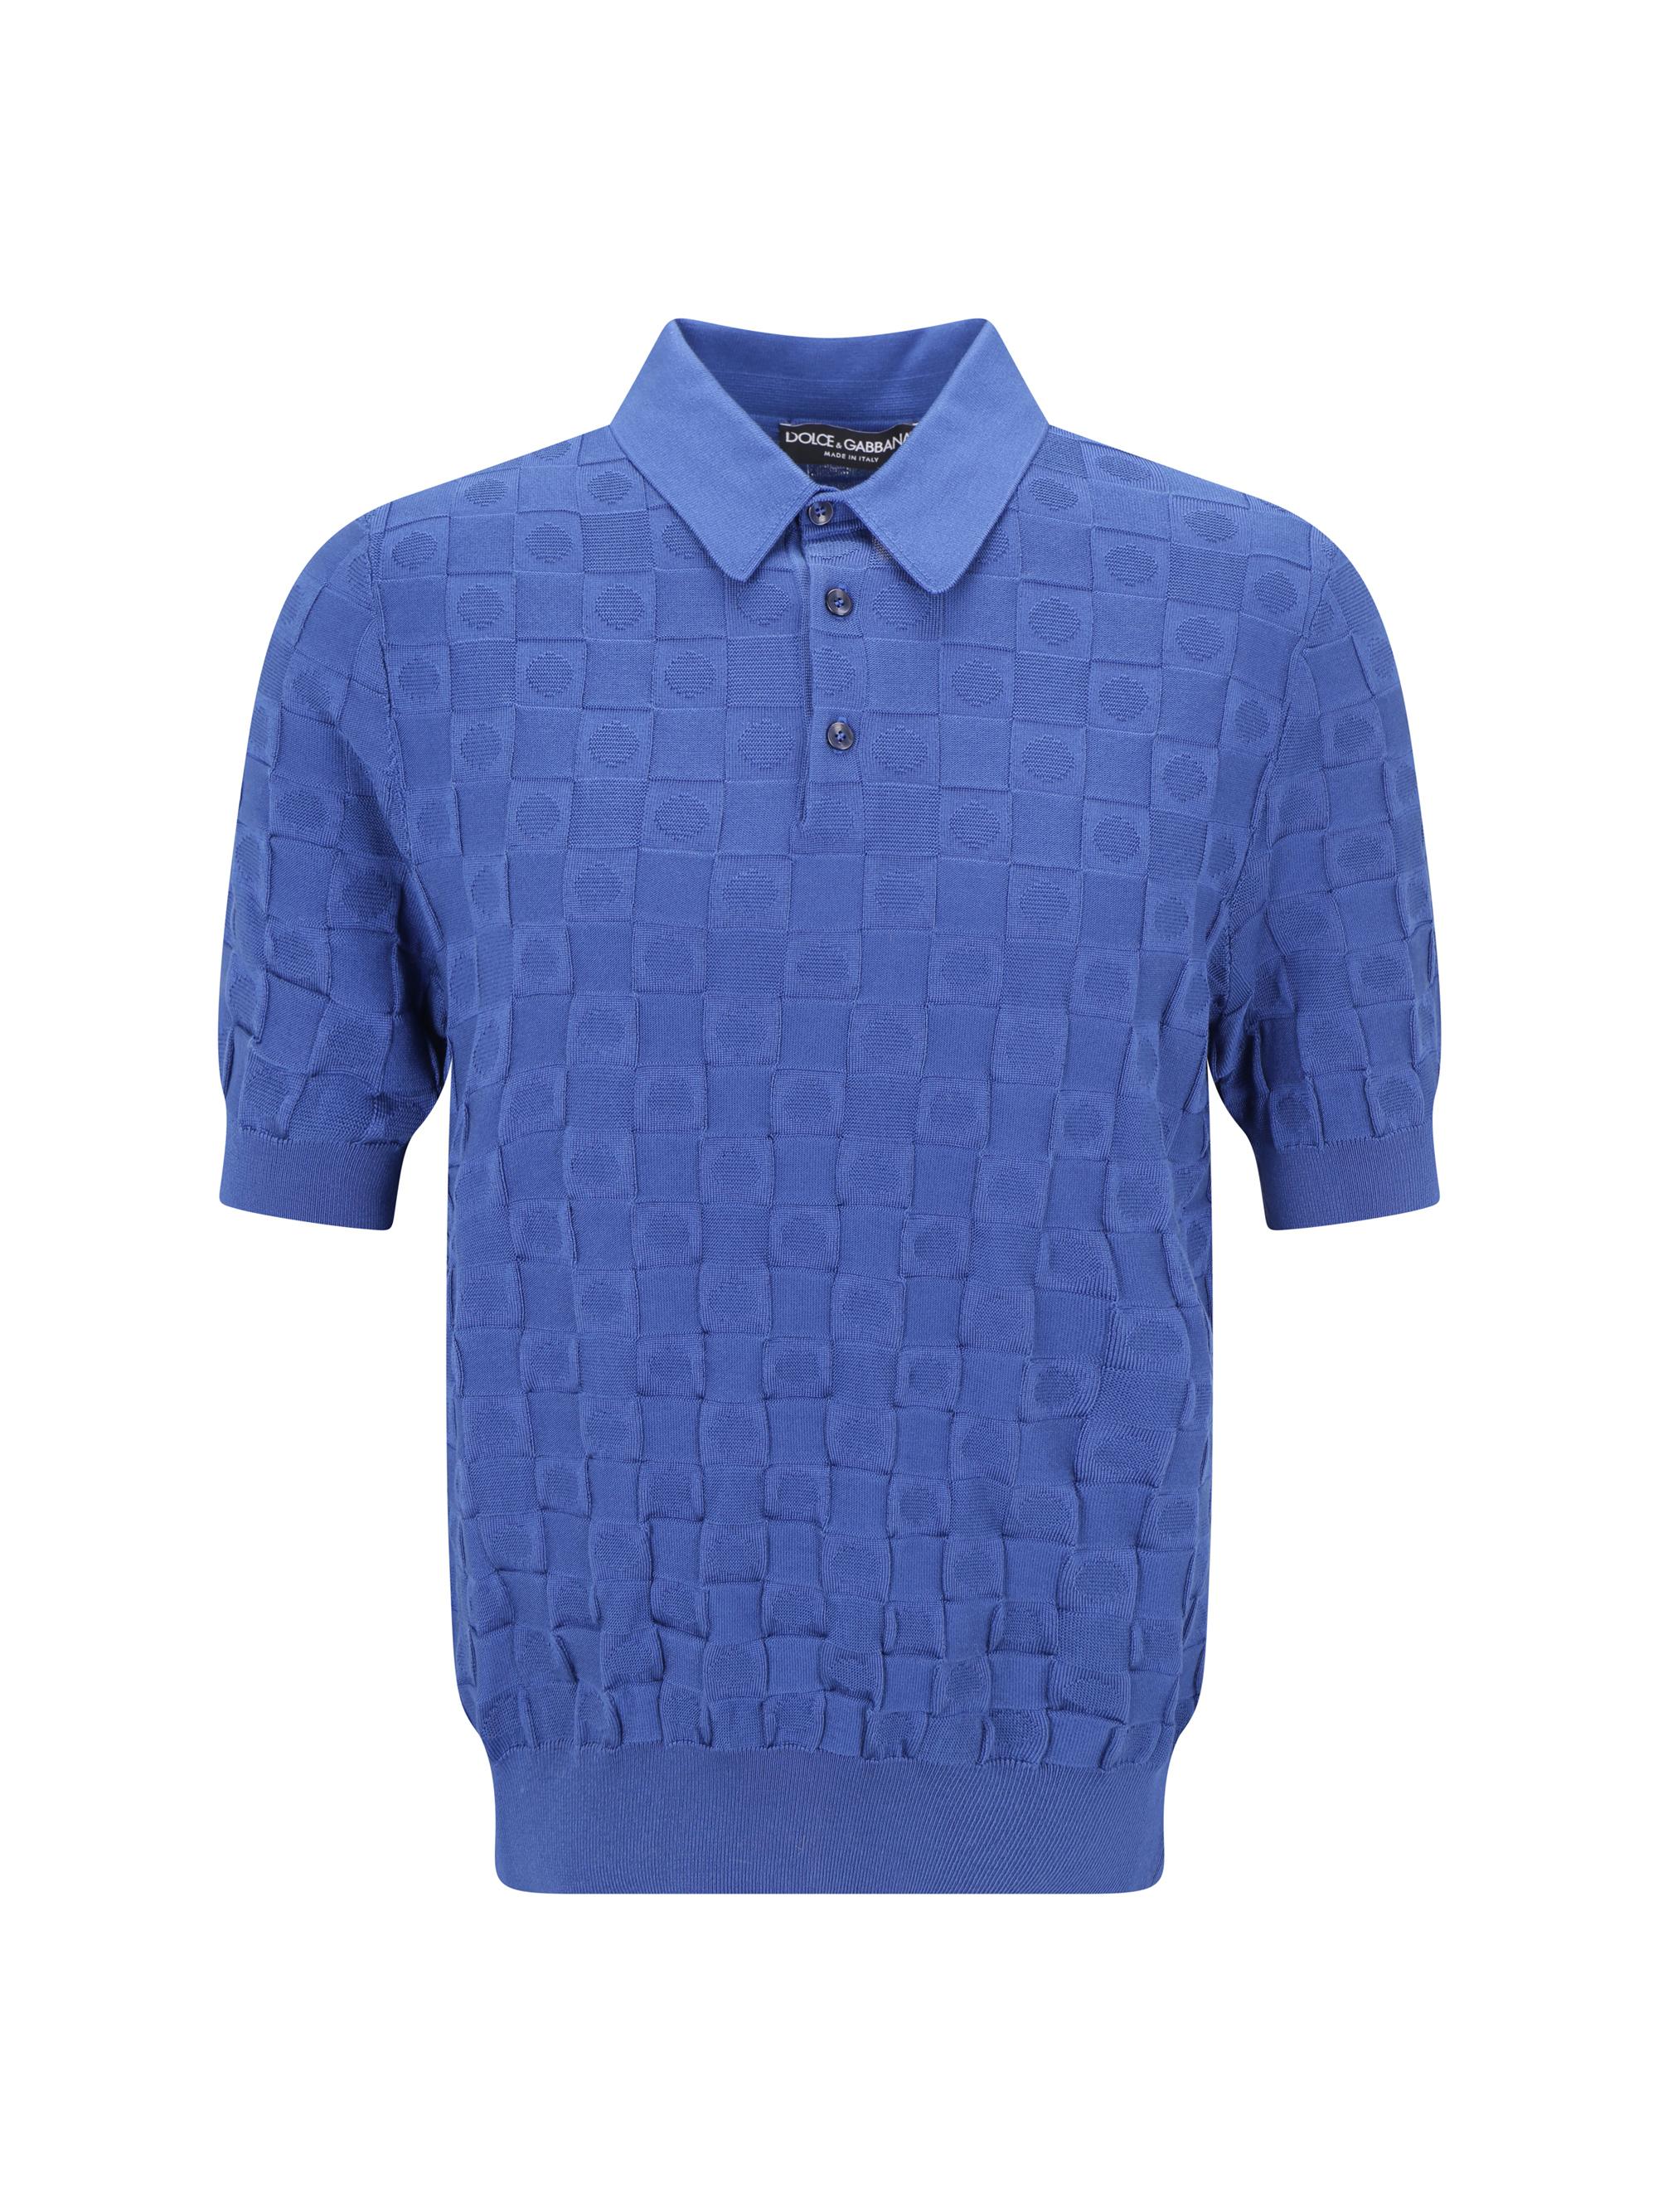 vuitton polo shirt blue